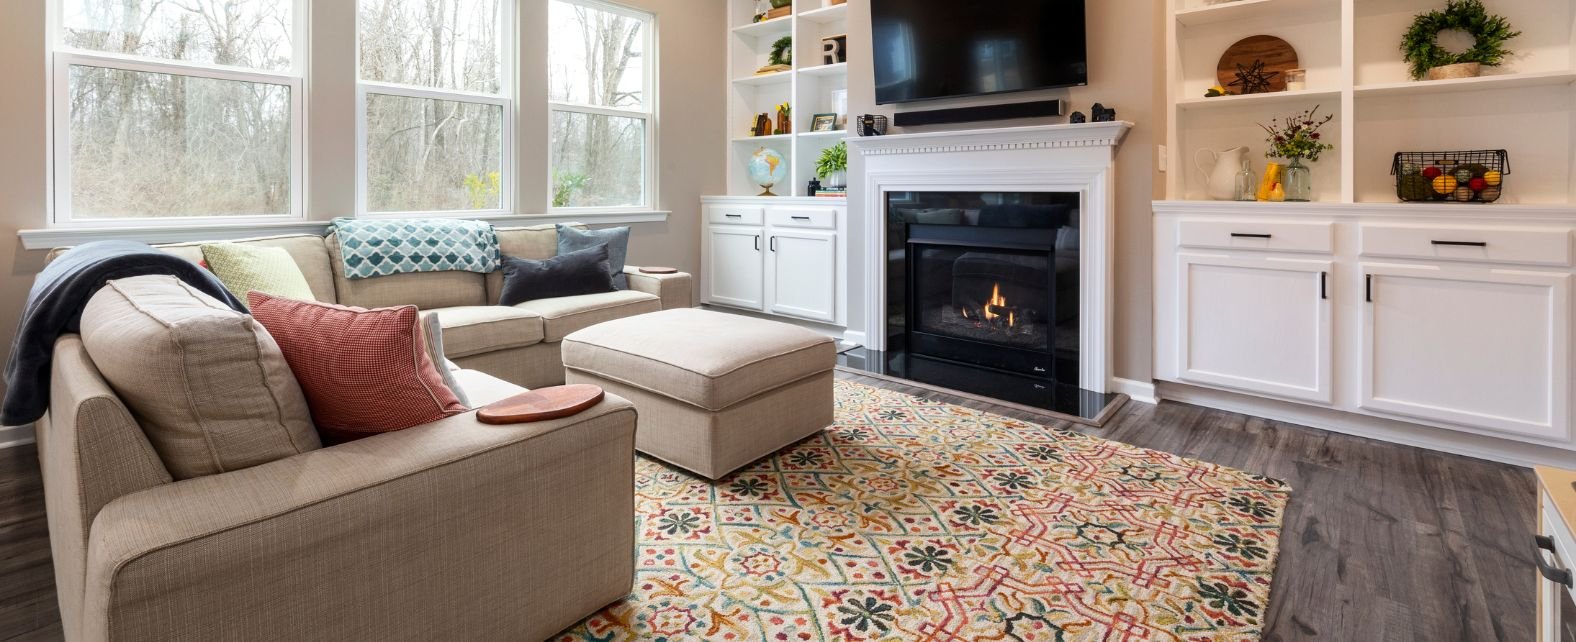 Salon au style cosy avec un tapis multicolore et des formes géométriques